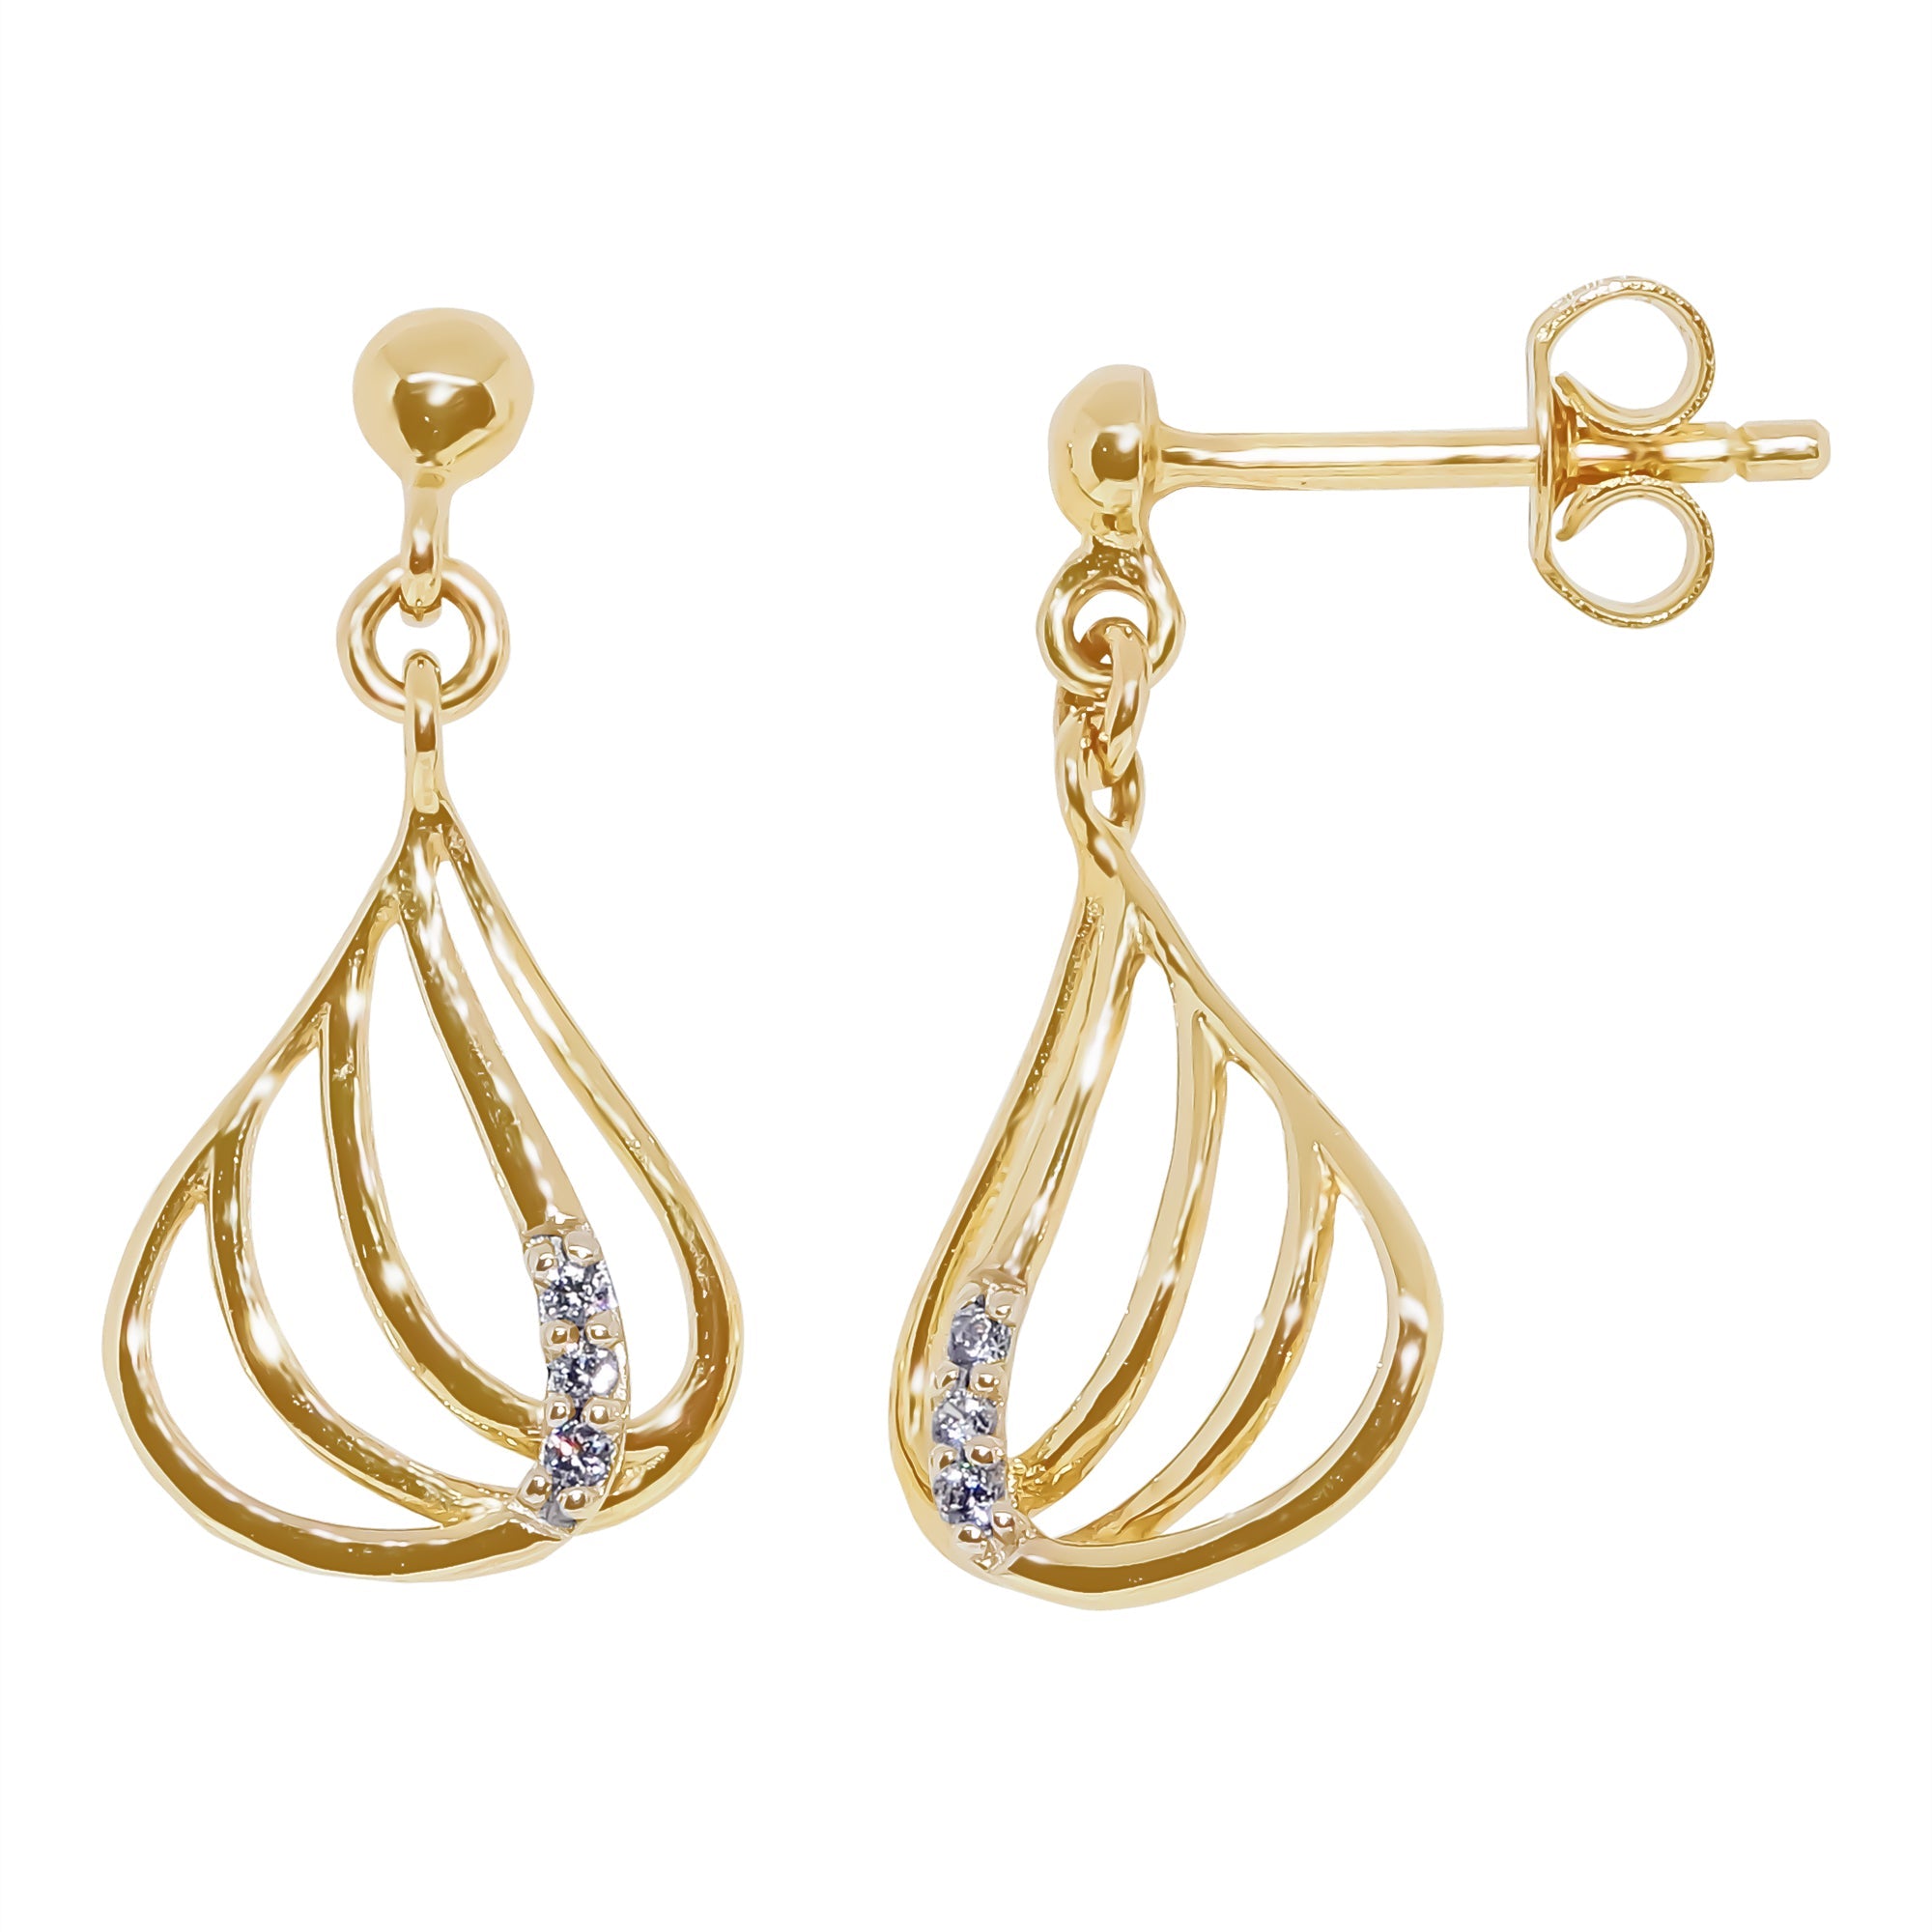 9ct gold cz drop earrings